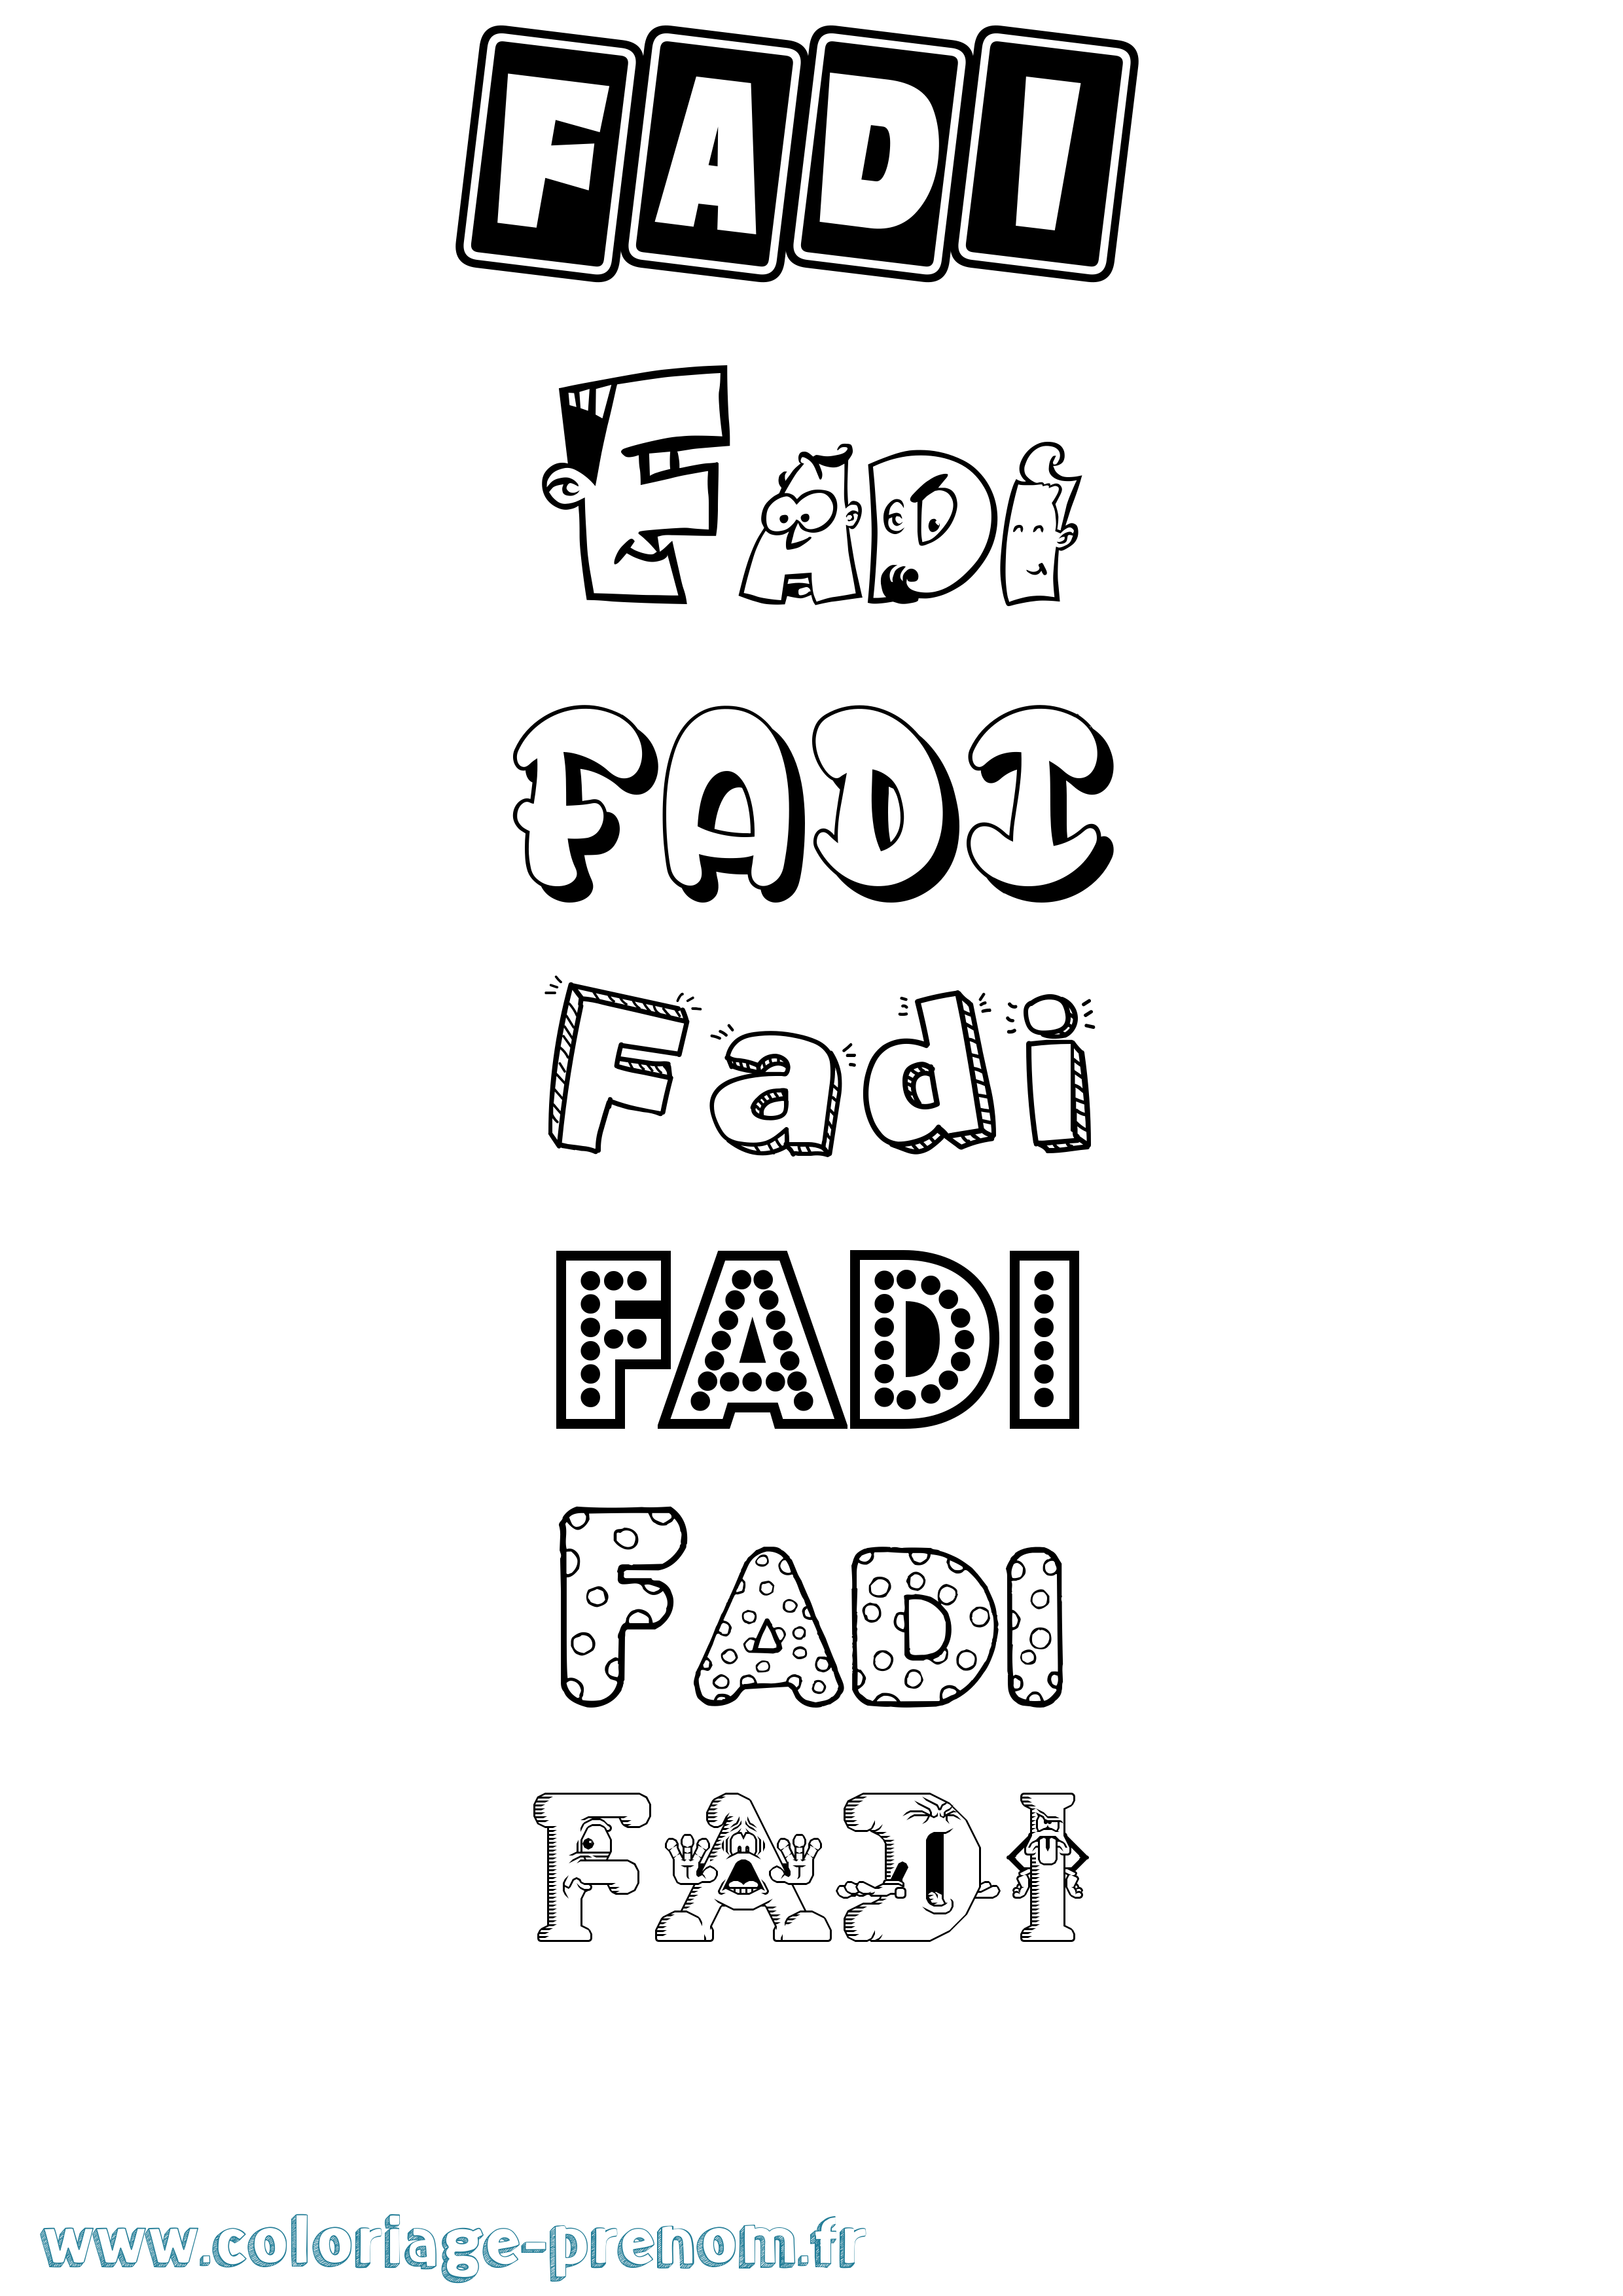 Coloriage prénom Fadi